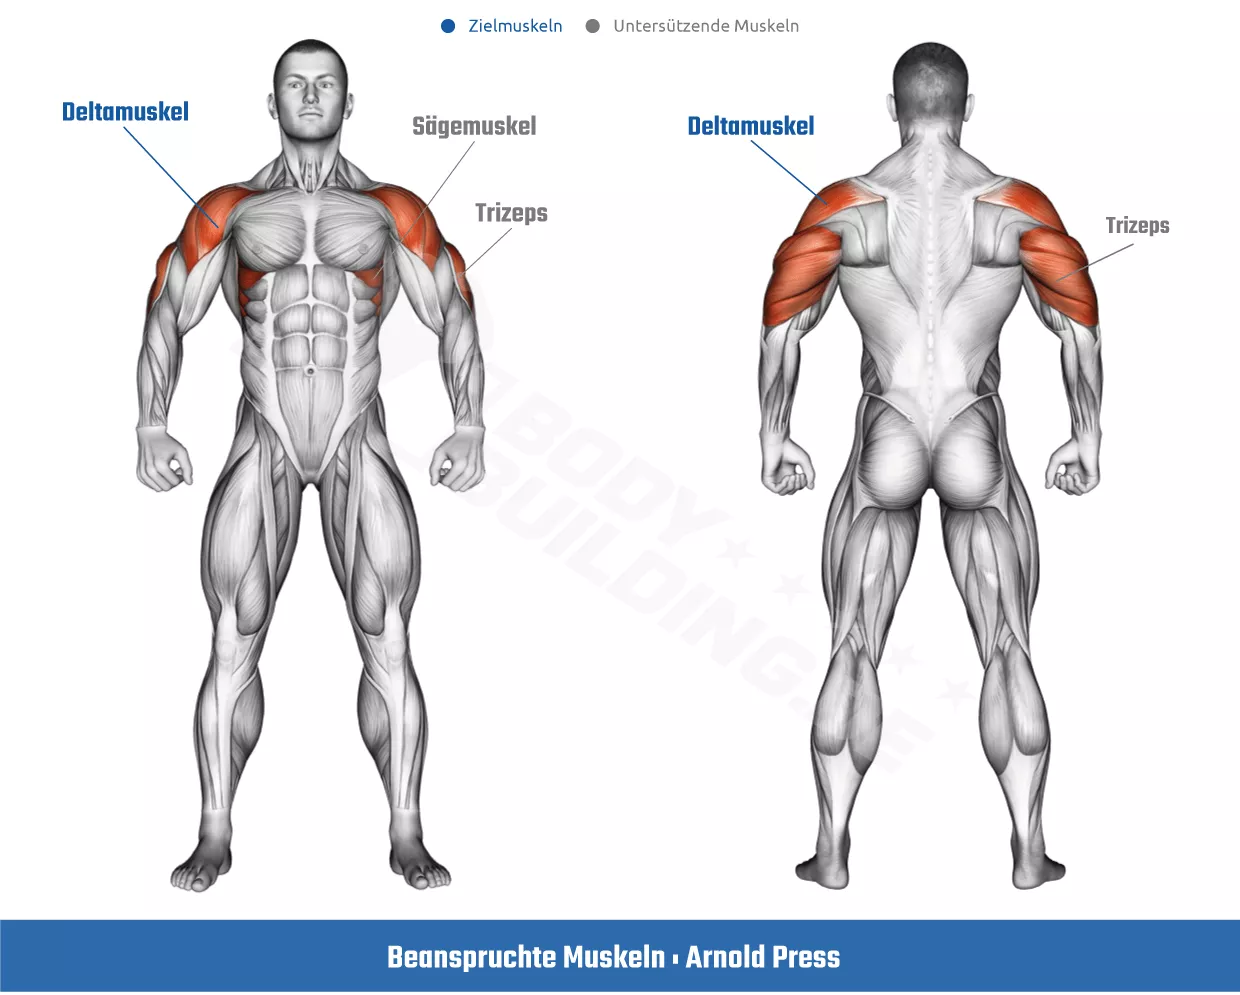 Beanspruchte Muskeln bei der Arnold Press